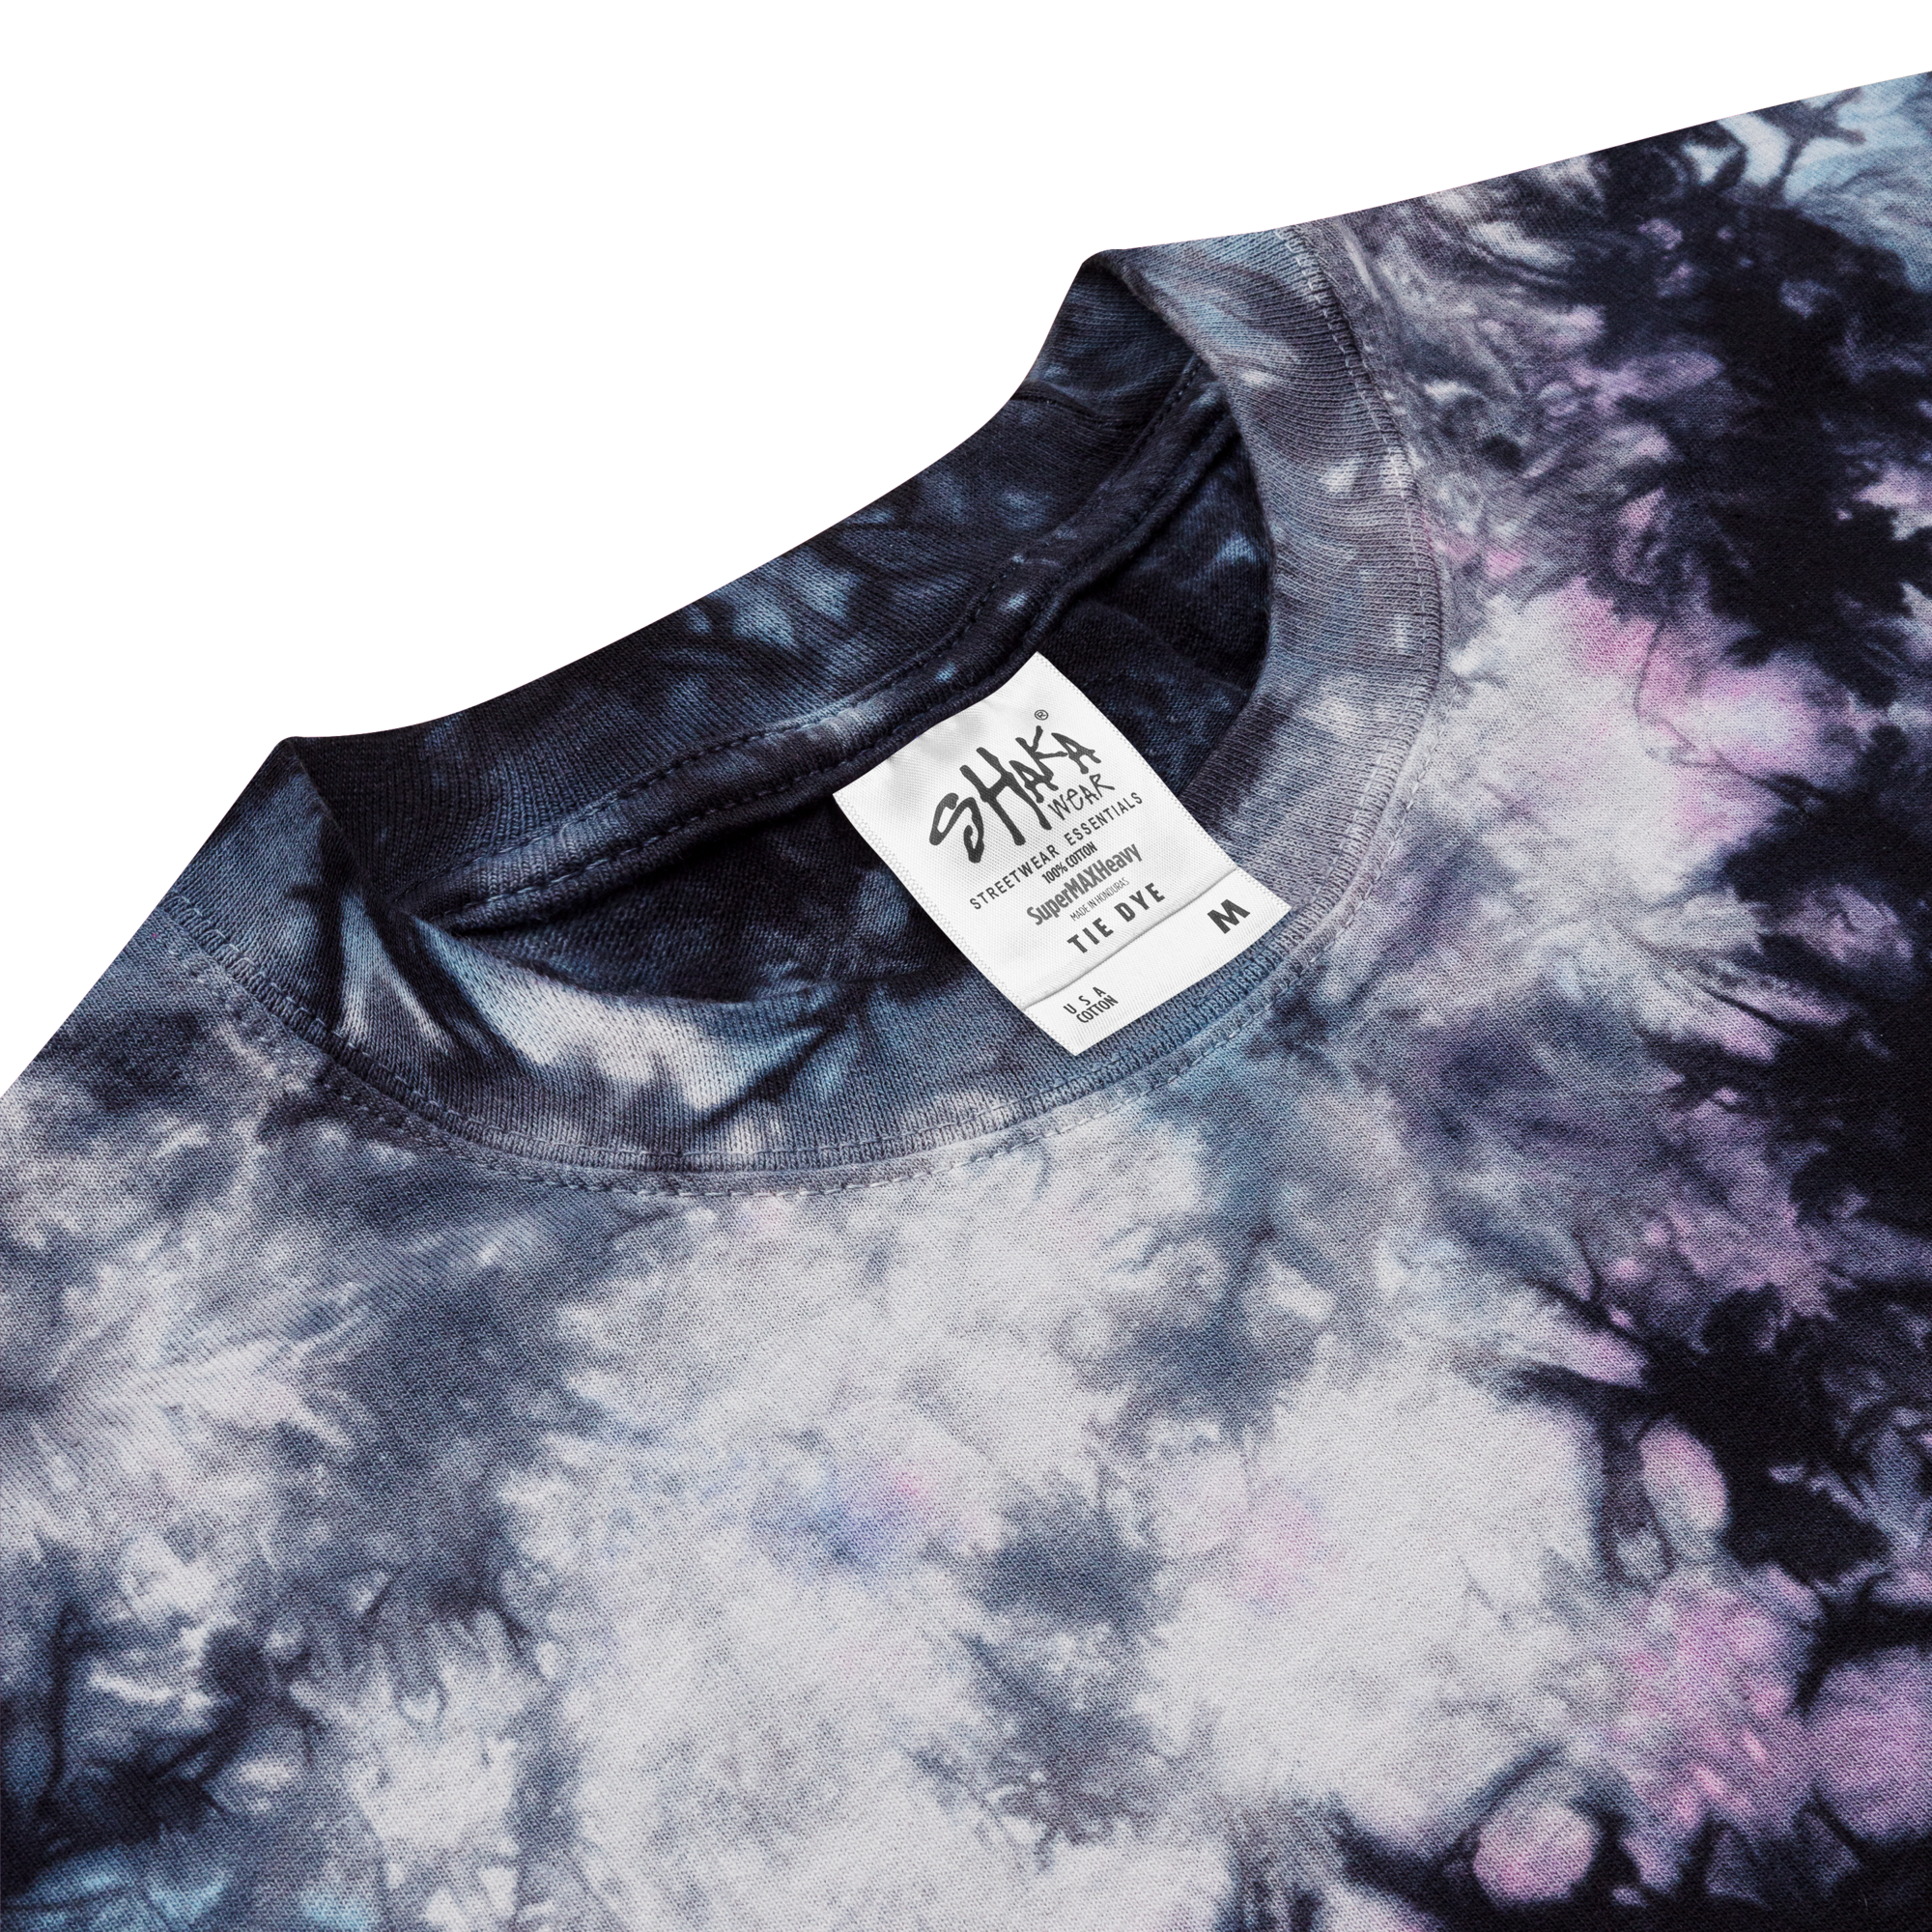 Camiseta extragrande con efecto tie-dye y arcoíris bordado de Boardom